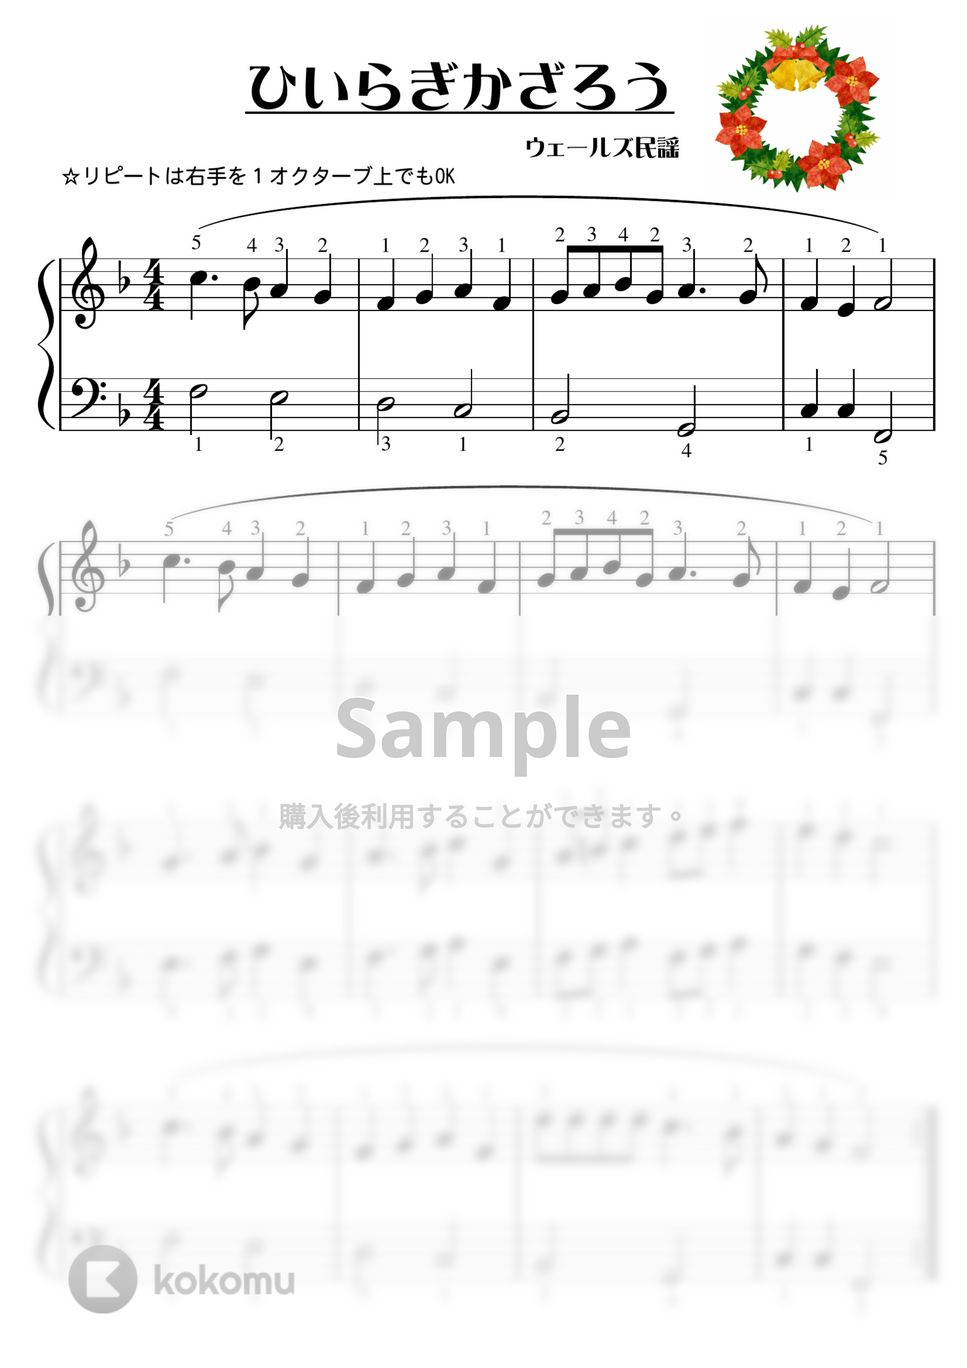 【ピアノ初級】ひいらぎかざろう☆クリスマスソング☆ (クリスマス,クリスマスキャロル) by ピアノのせんせいの楽譜集